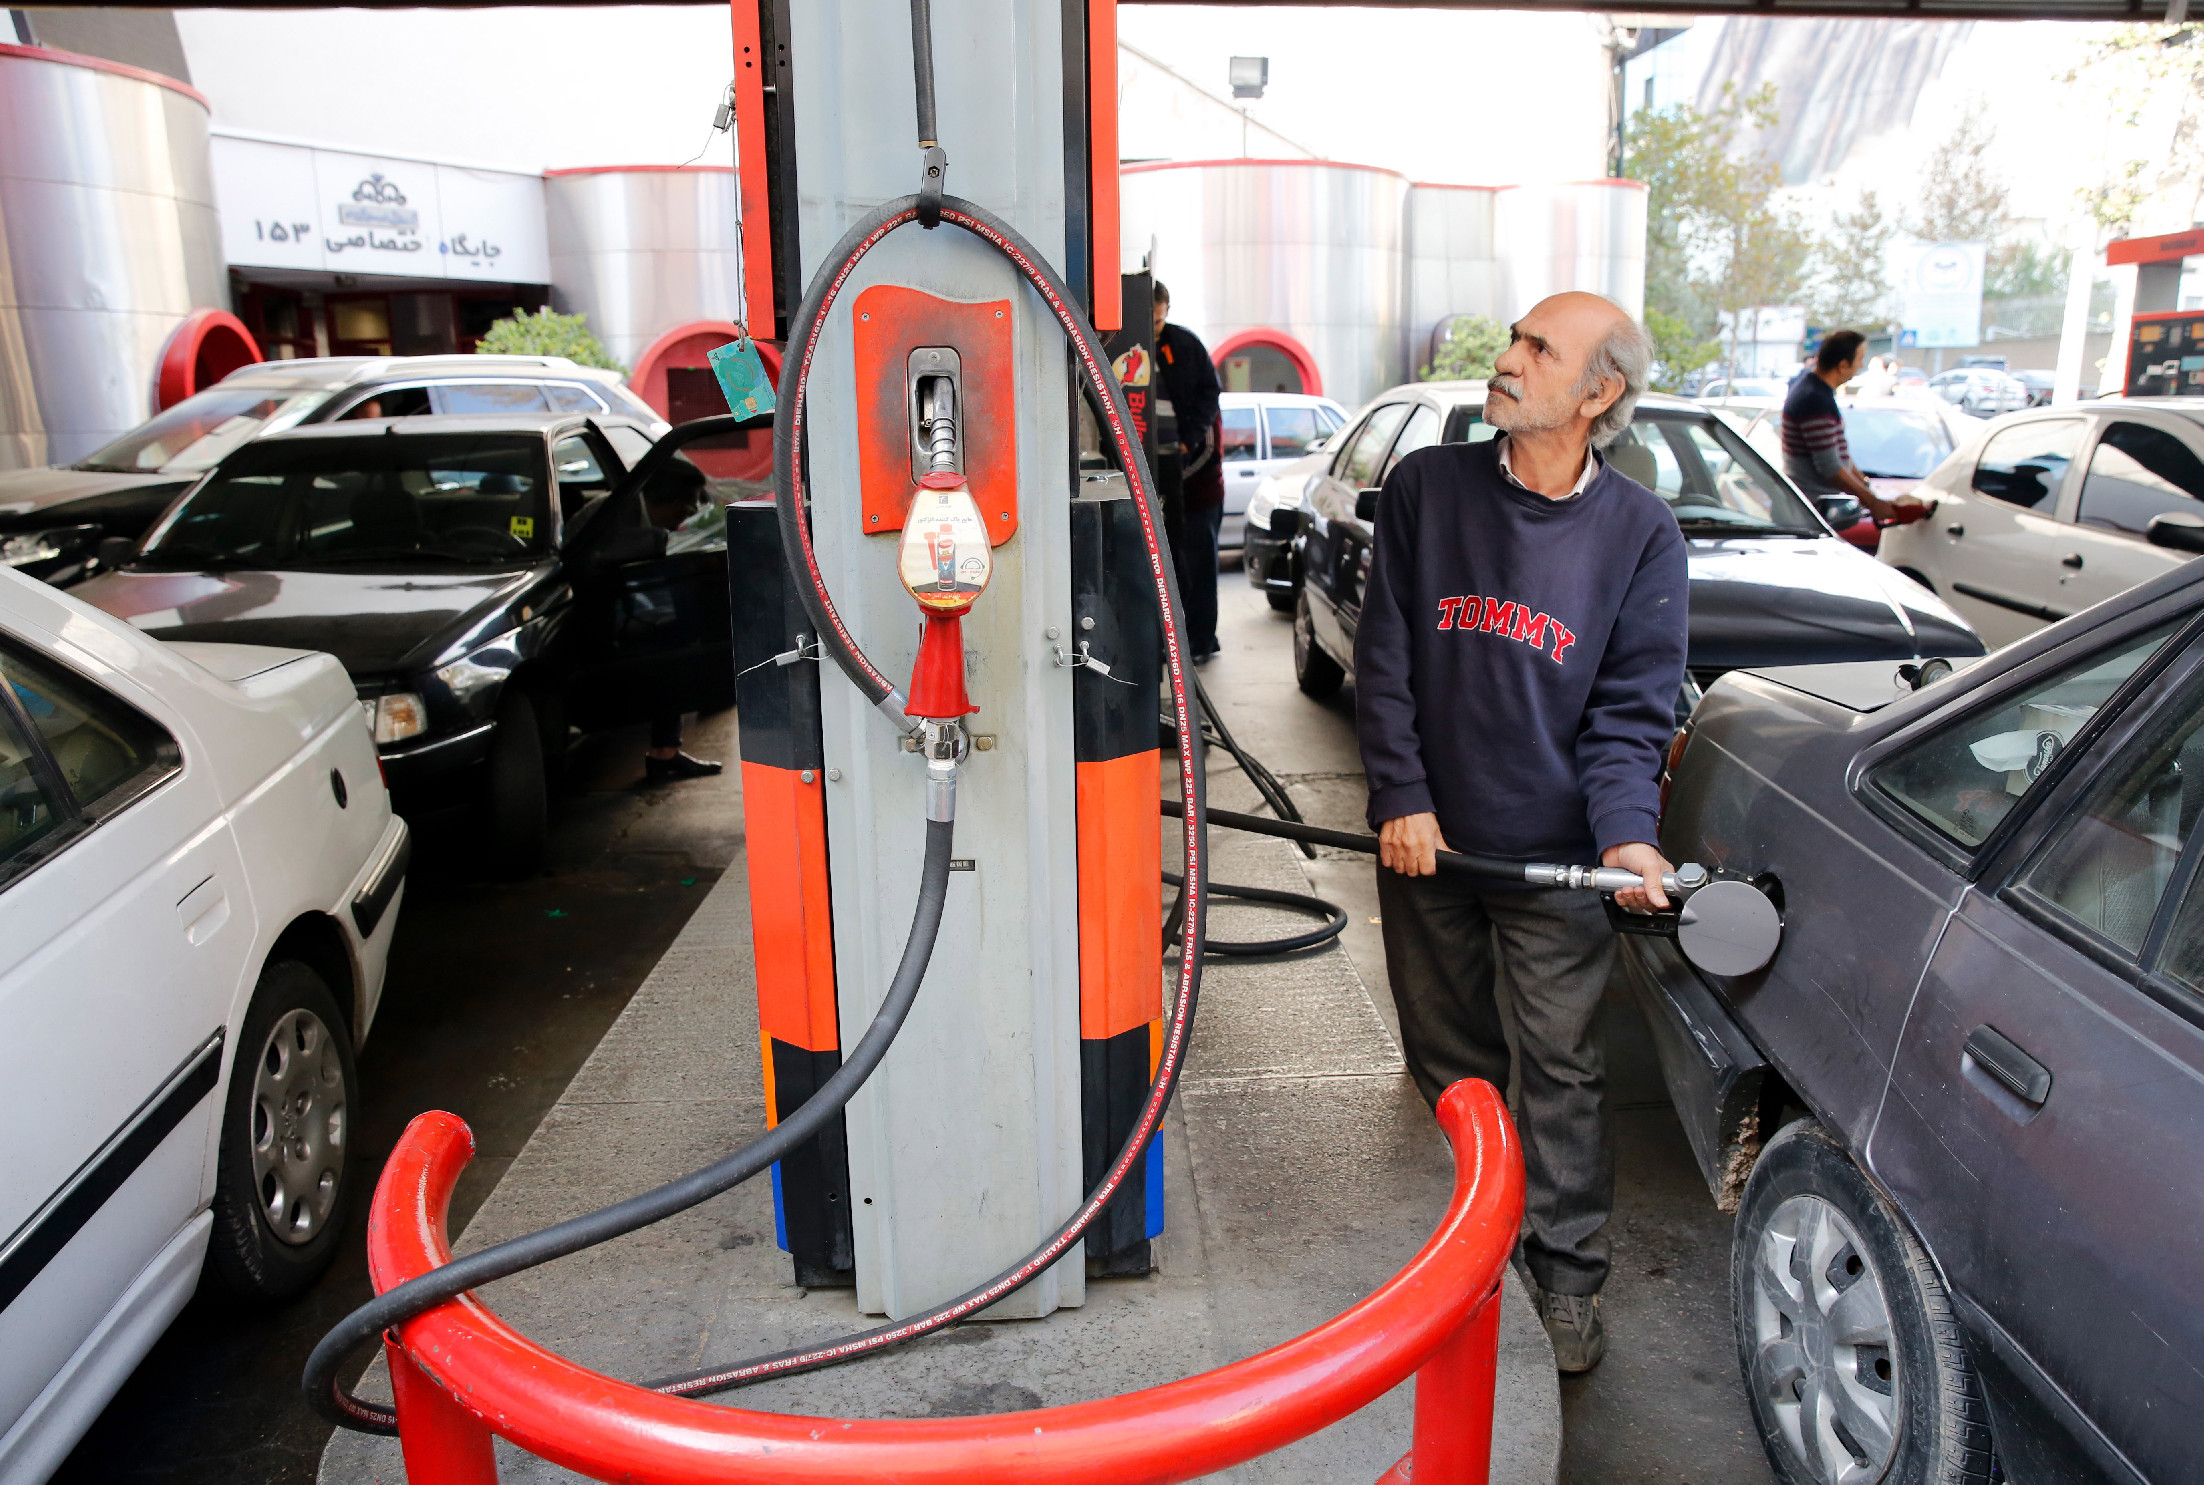 Meghekkelték az iráni benzinkutakat, hatalmas sorok alakultak ki